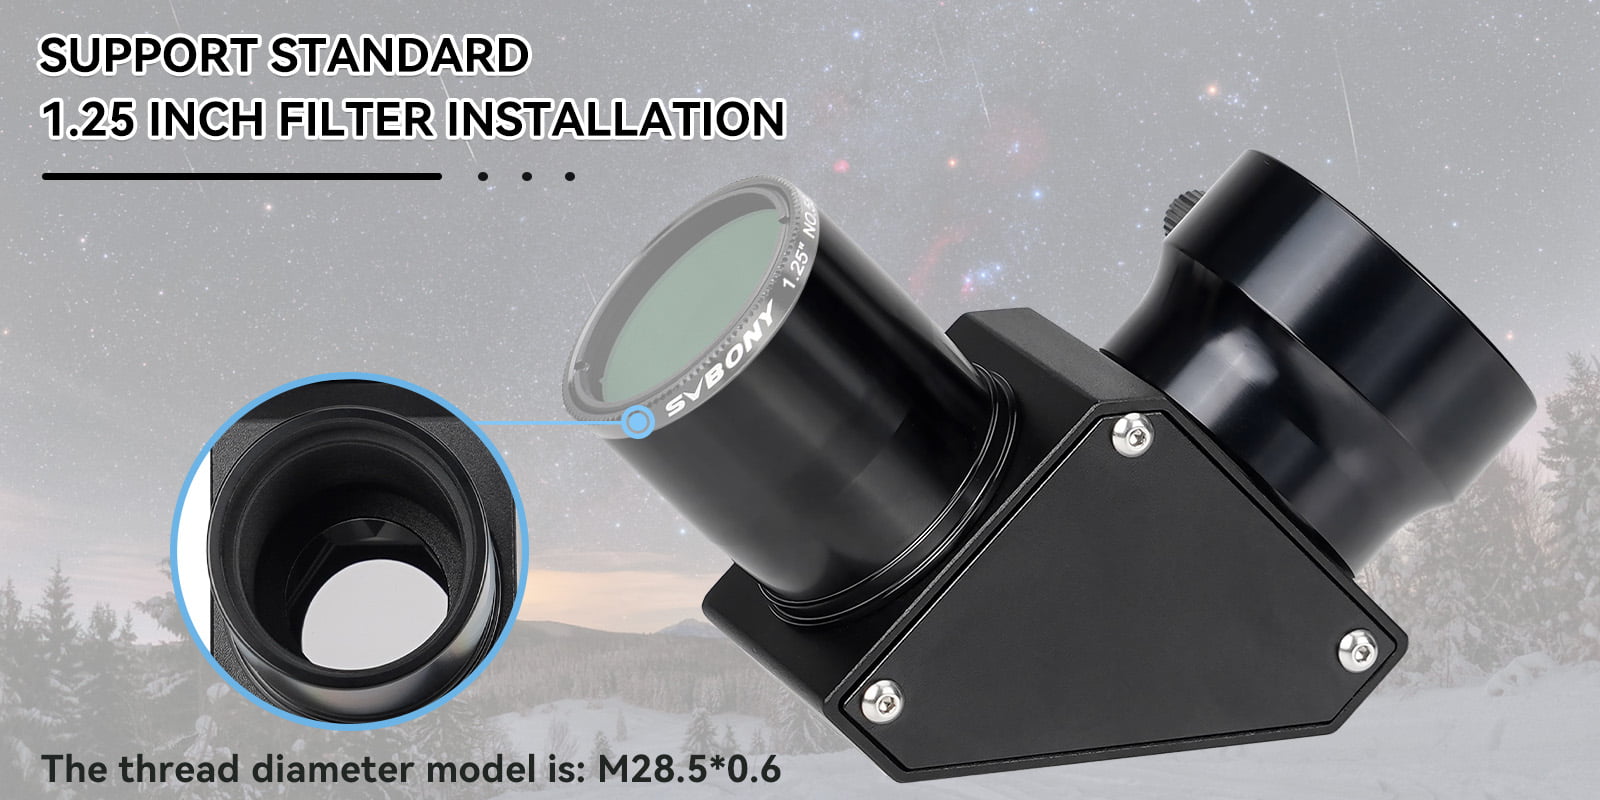 sv222 support standard 1.25 inch filter installation 16.jpg